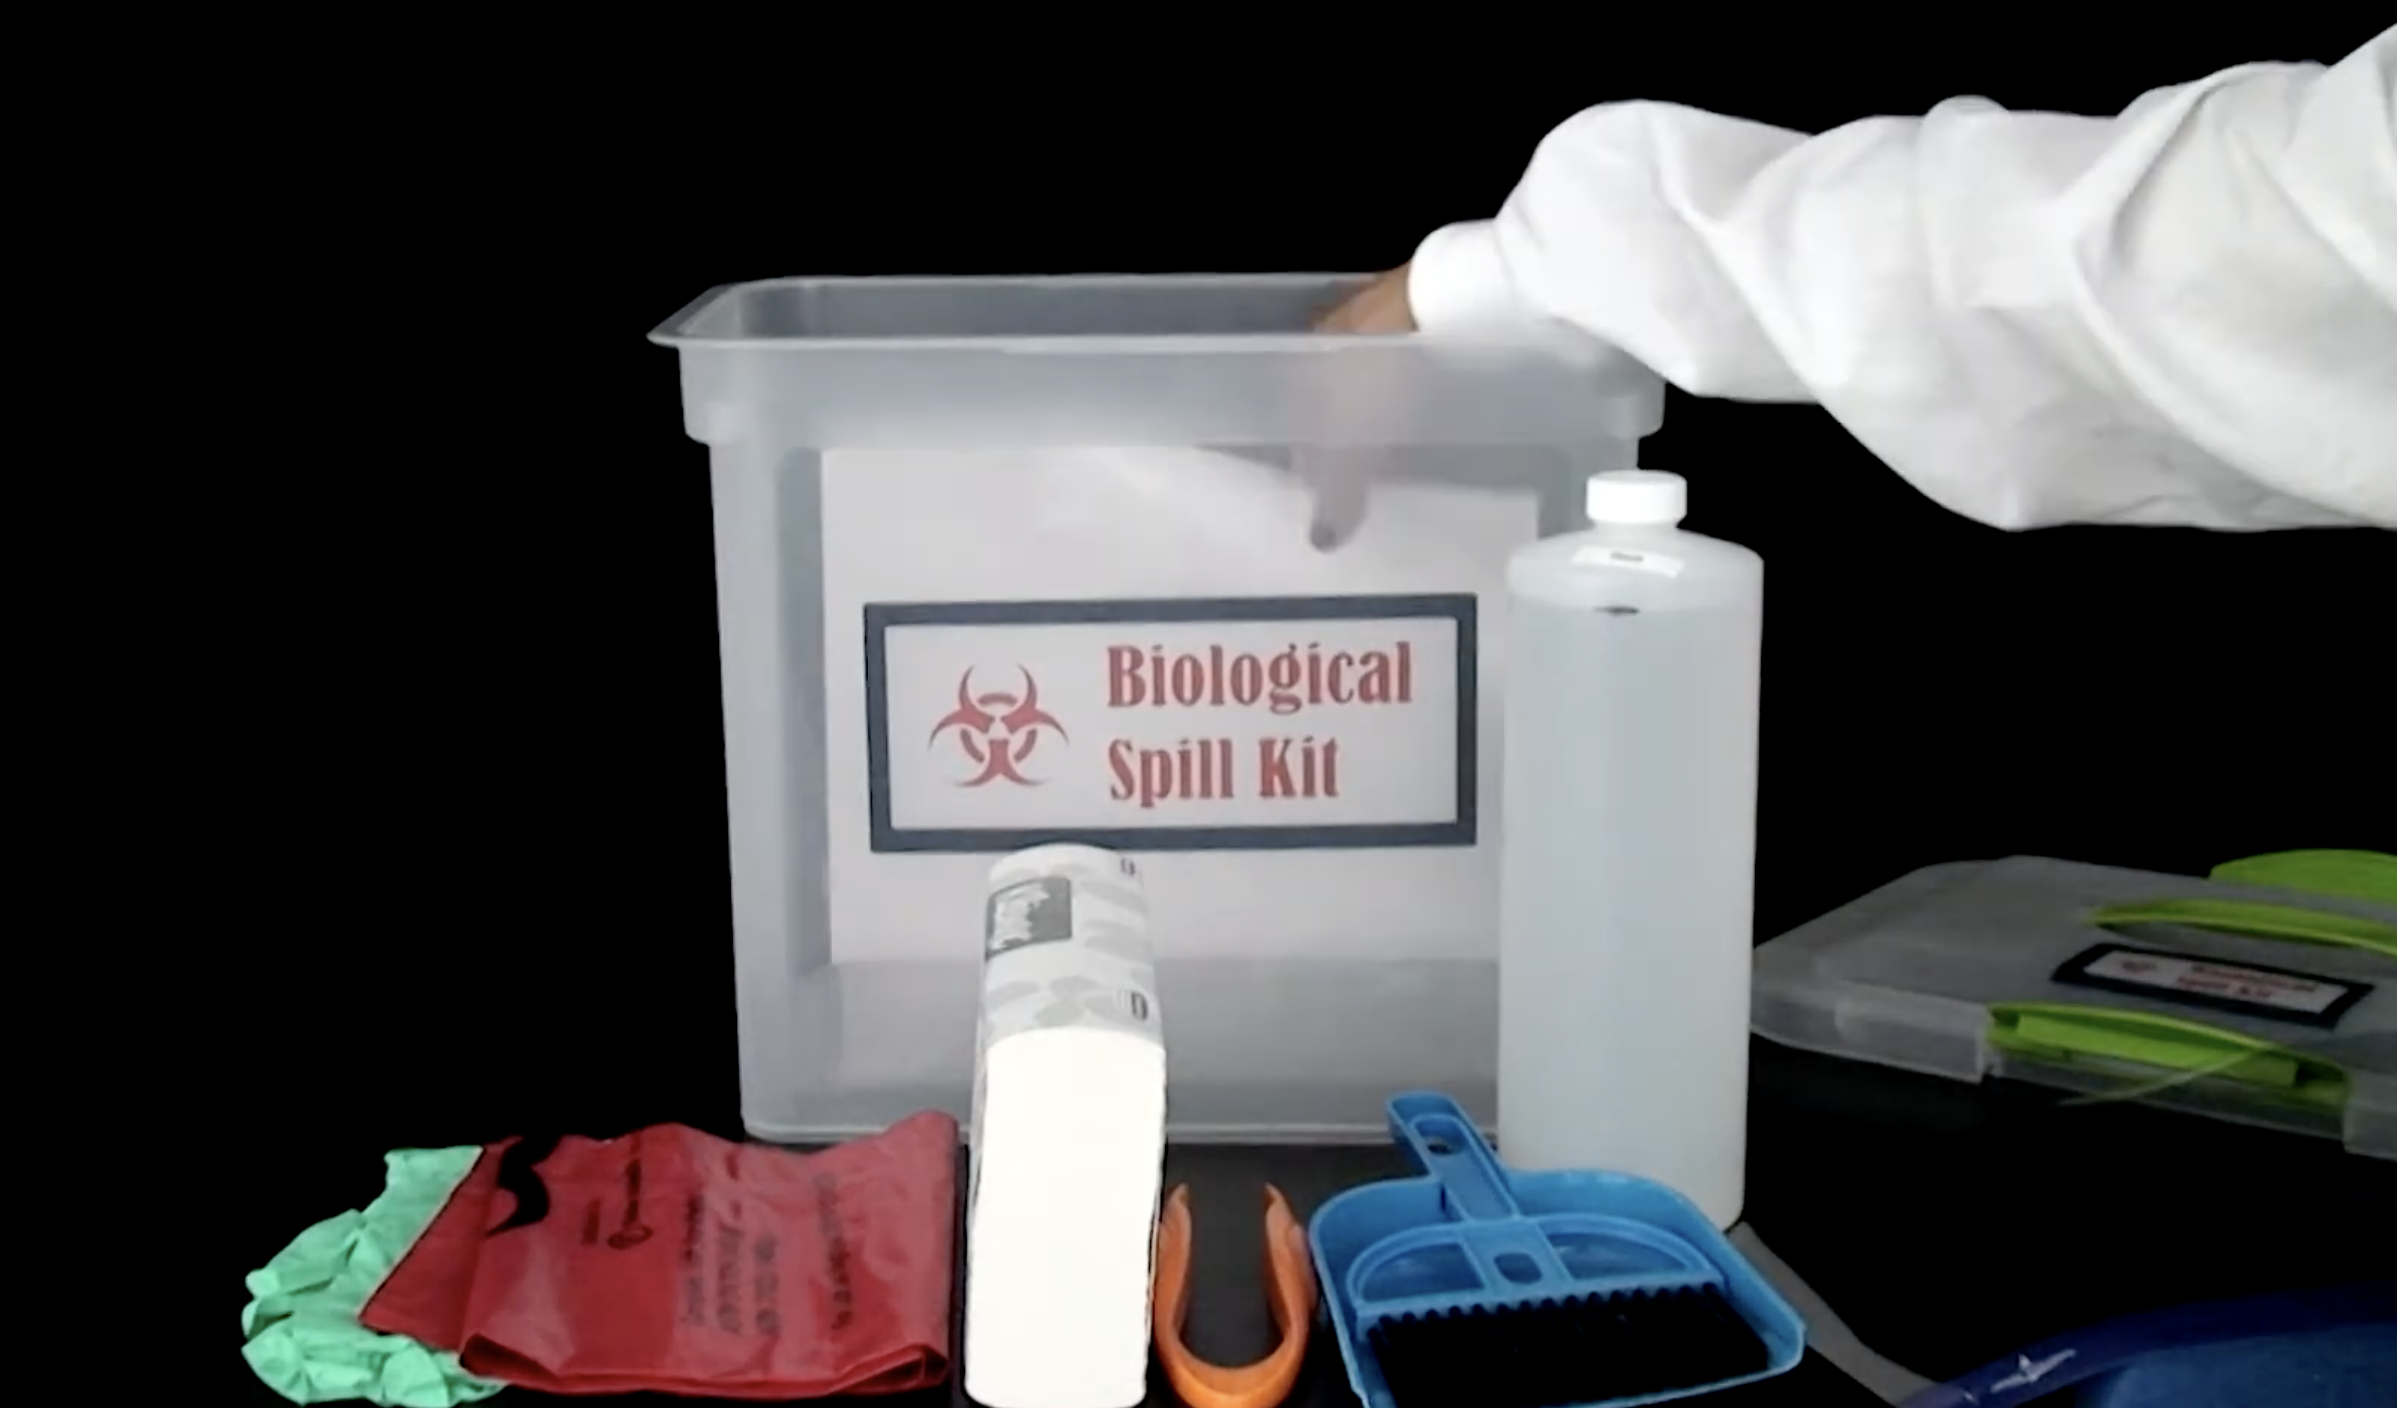 Biological Spill Kit